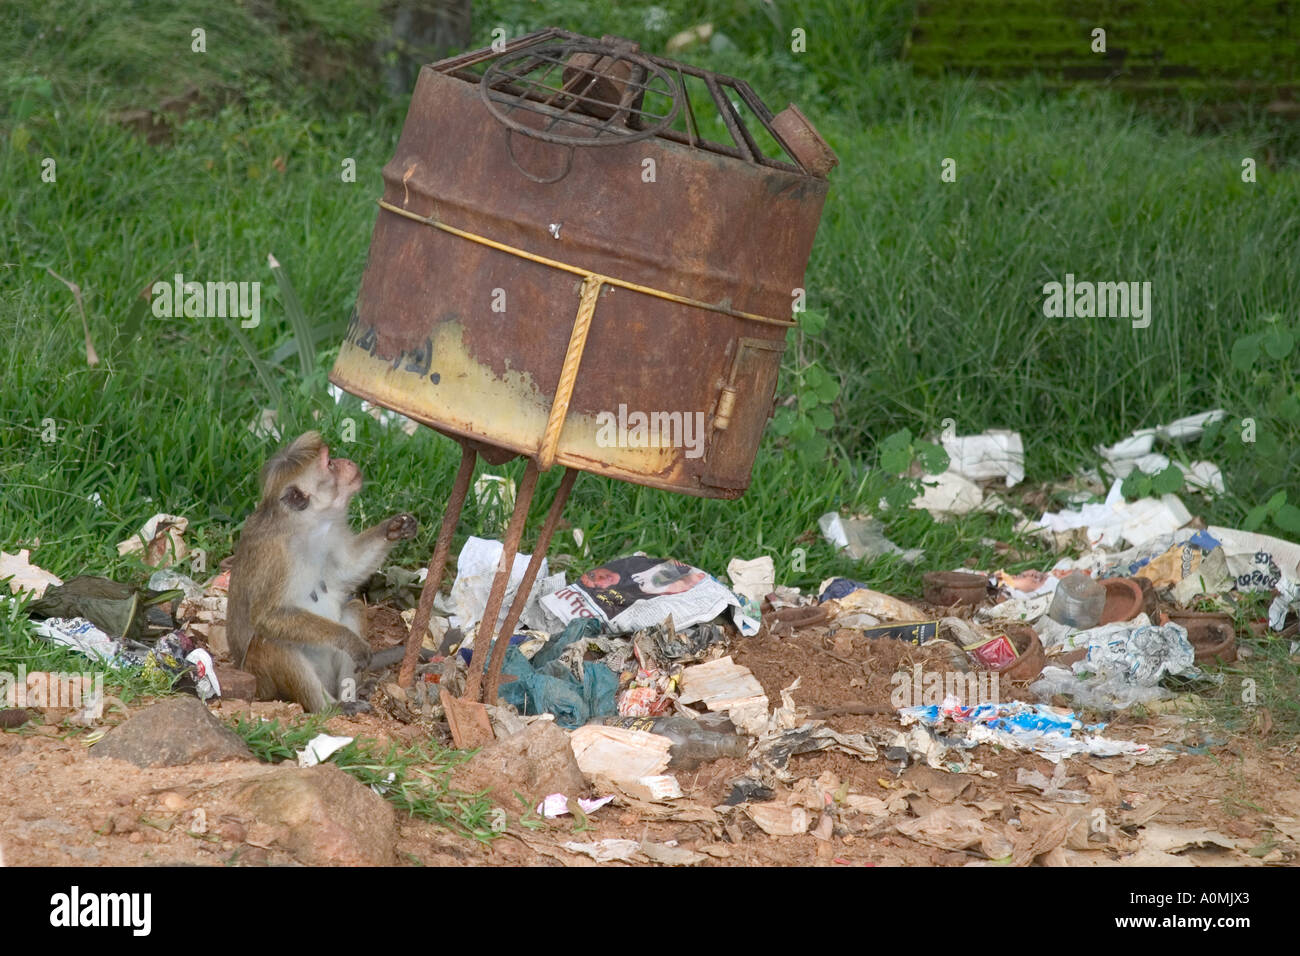 Monkey scavenging amongst overflowing rubbish bin. Polonnaruwa, Sri Lanka Stock Photo